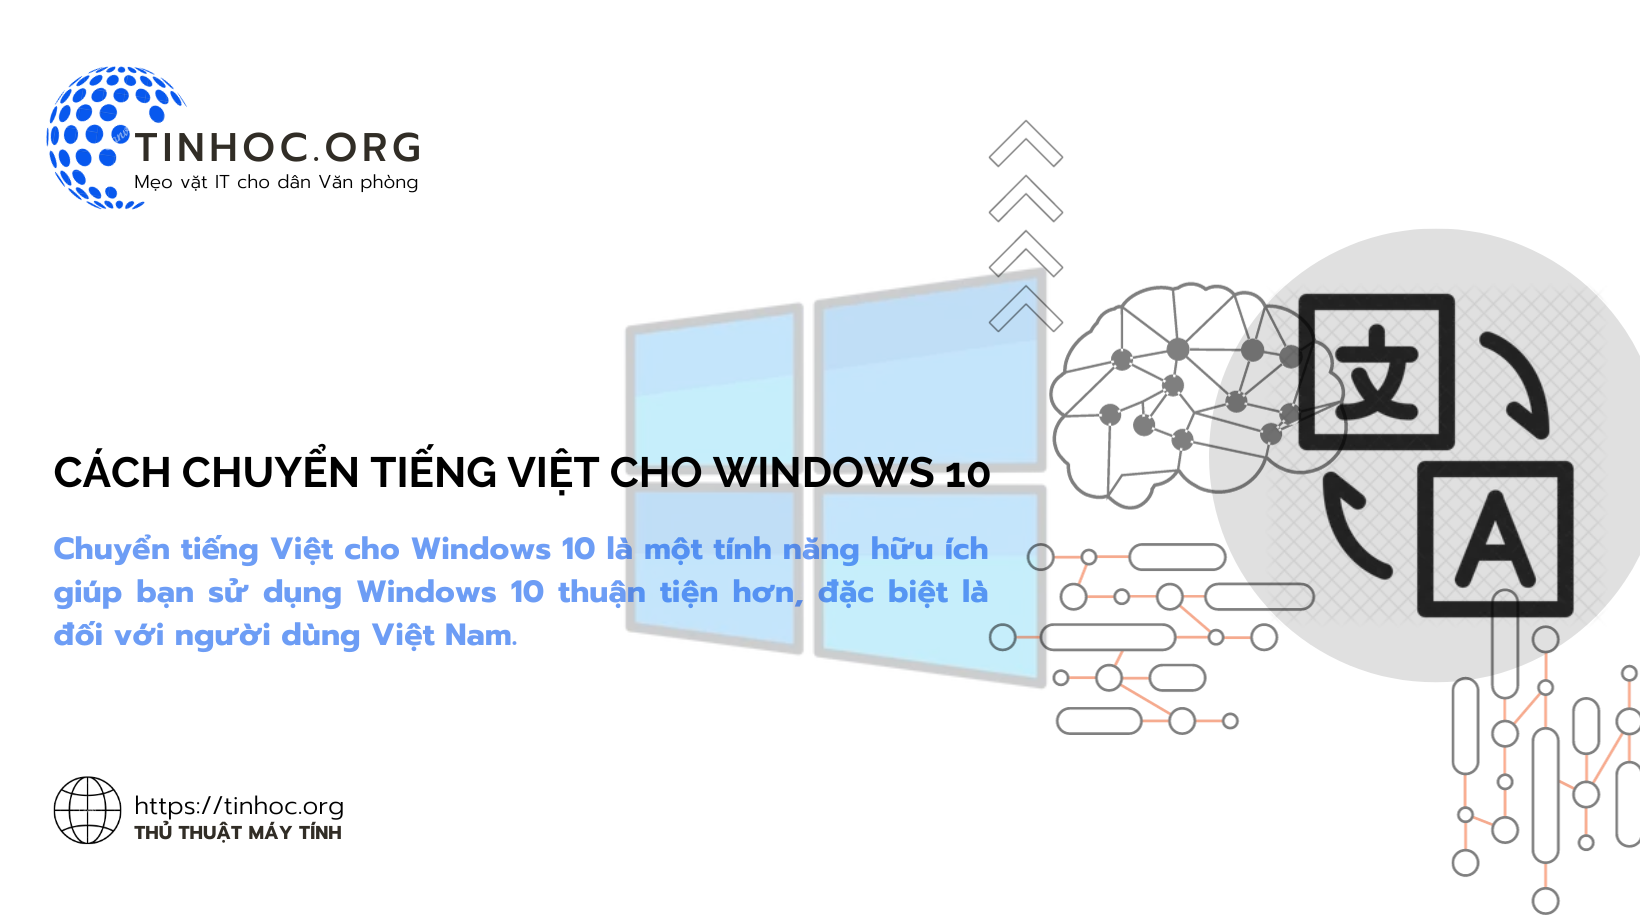 Chuyển tiếng Việt cho Windows 10 là một tính năng hữu ích giúp bạn sử dụng Windows 10 thuận tiện hơn, đặc biệt là đối với người dùng Việt Nam.